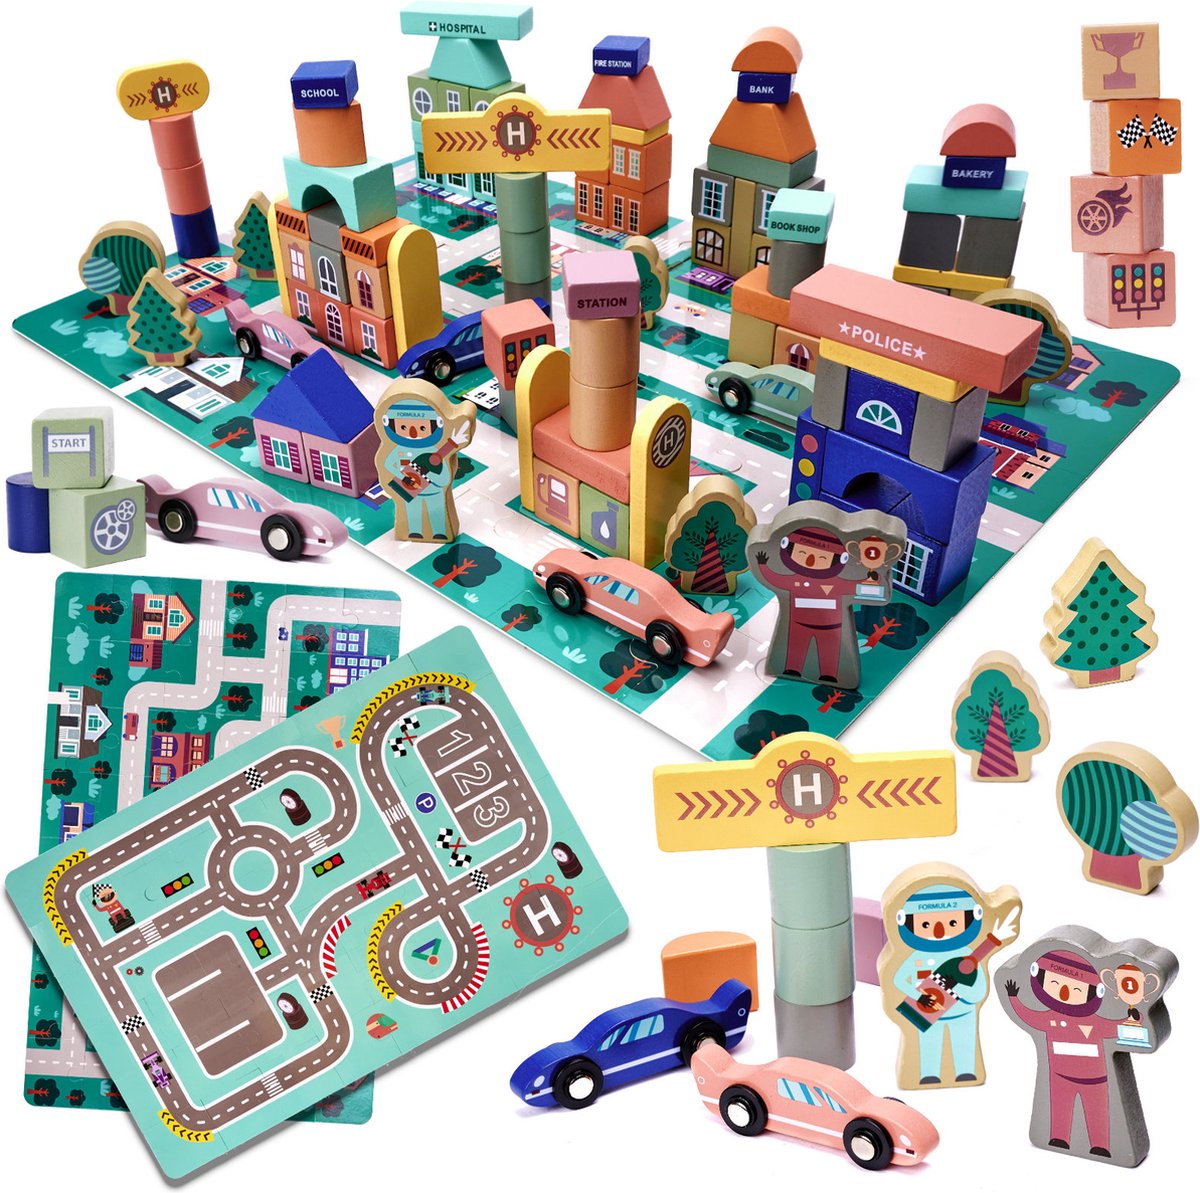 Blokken speelgoed met speelmat - Educatieve houten blokken - Speelgoed - 160 stuks - Blokken speelset - Ontwikkelingsspeelgoed - Stimuleert Motoriek en Creativiteit